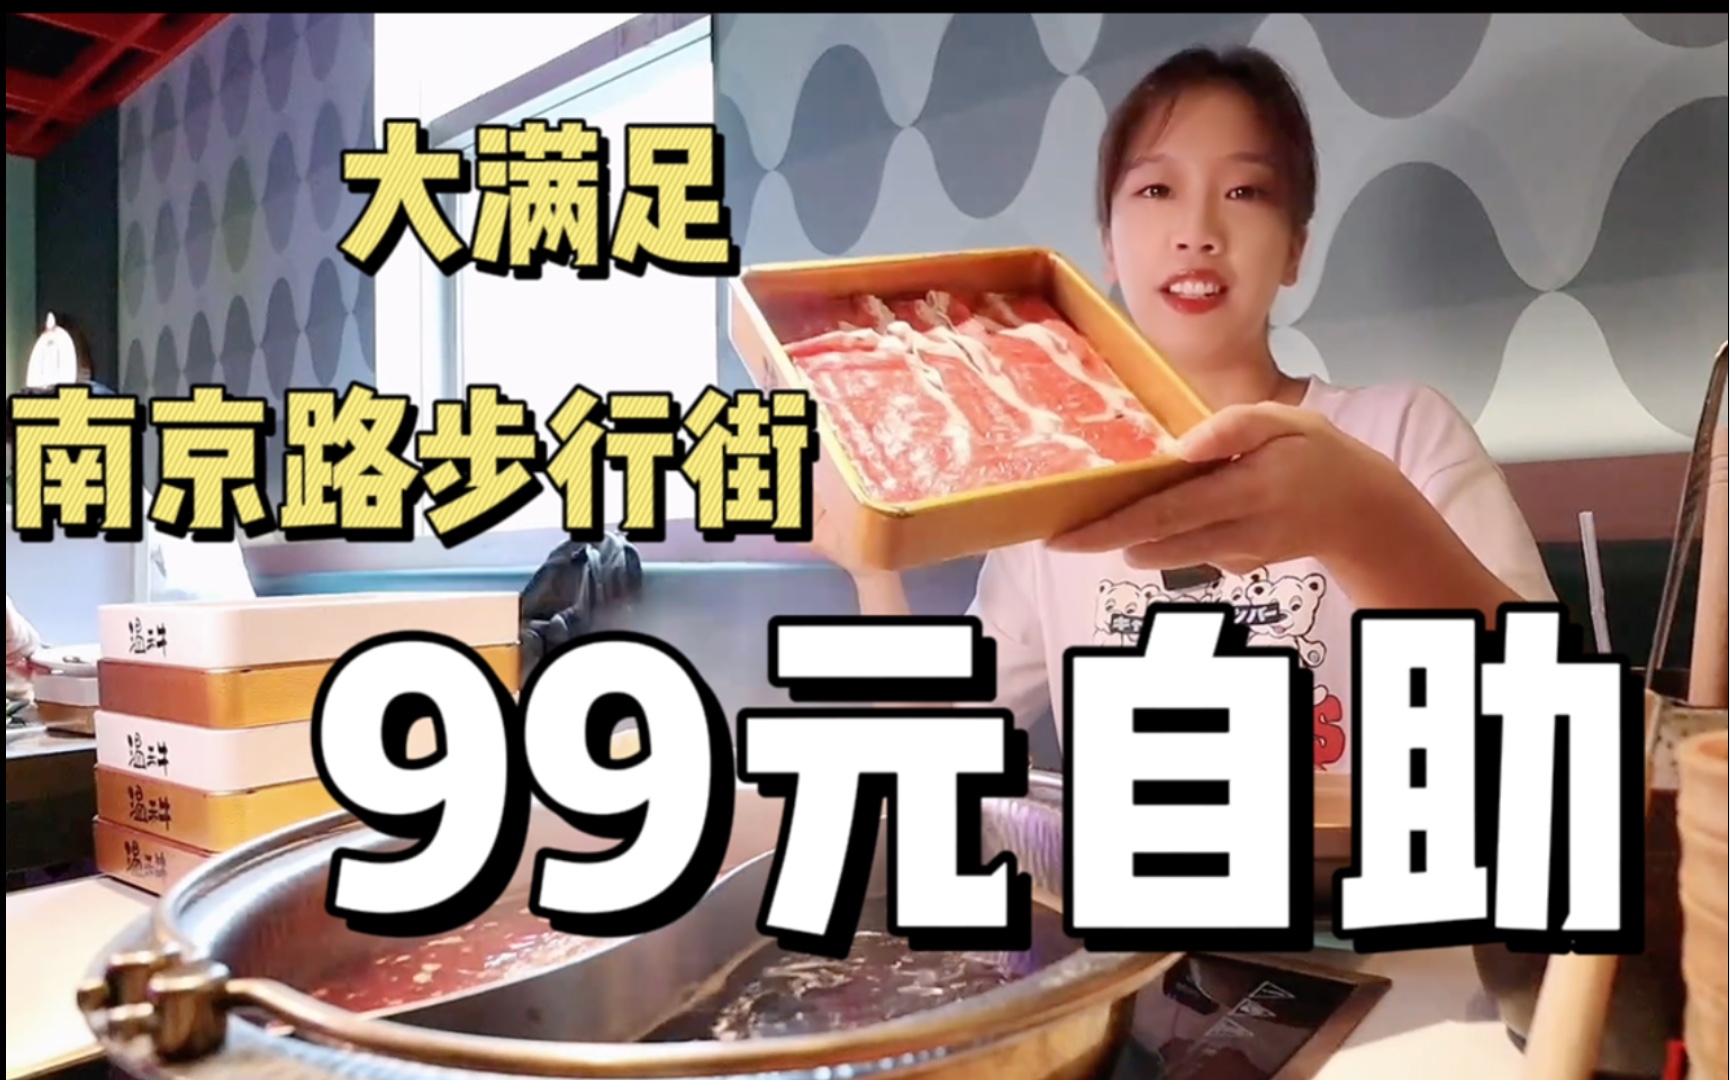 上海南京路上99元的寿喜烧自助，会是什么水平？15盘肉肉大满足